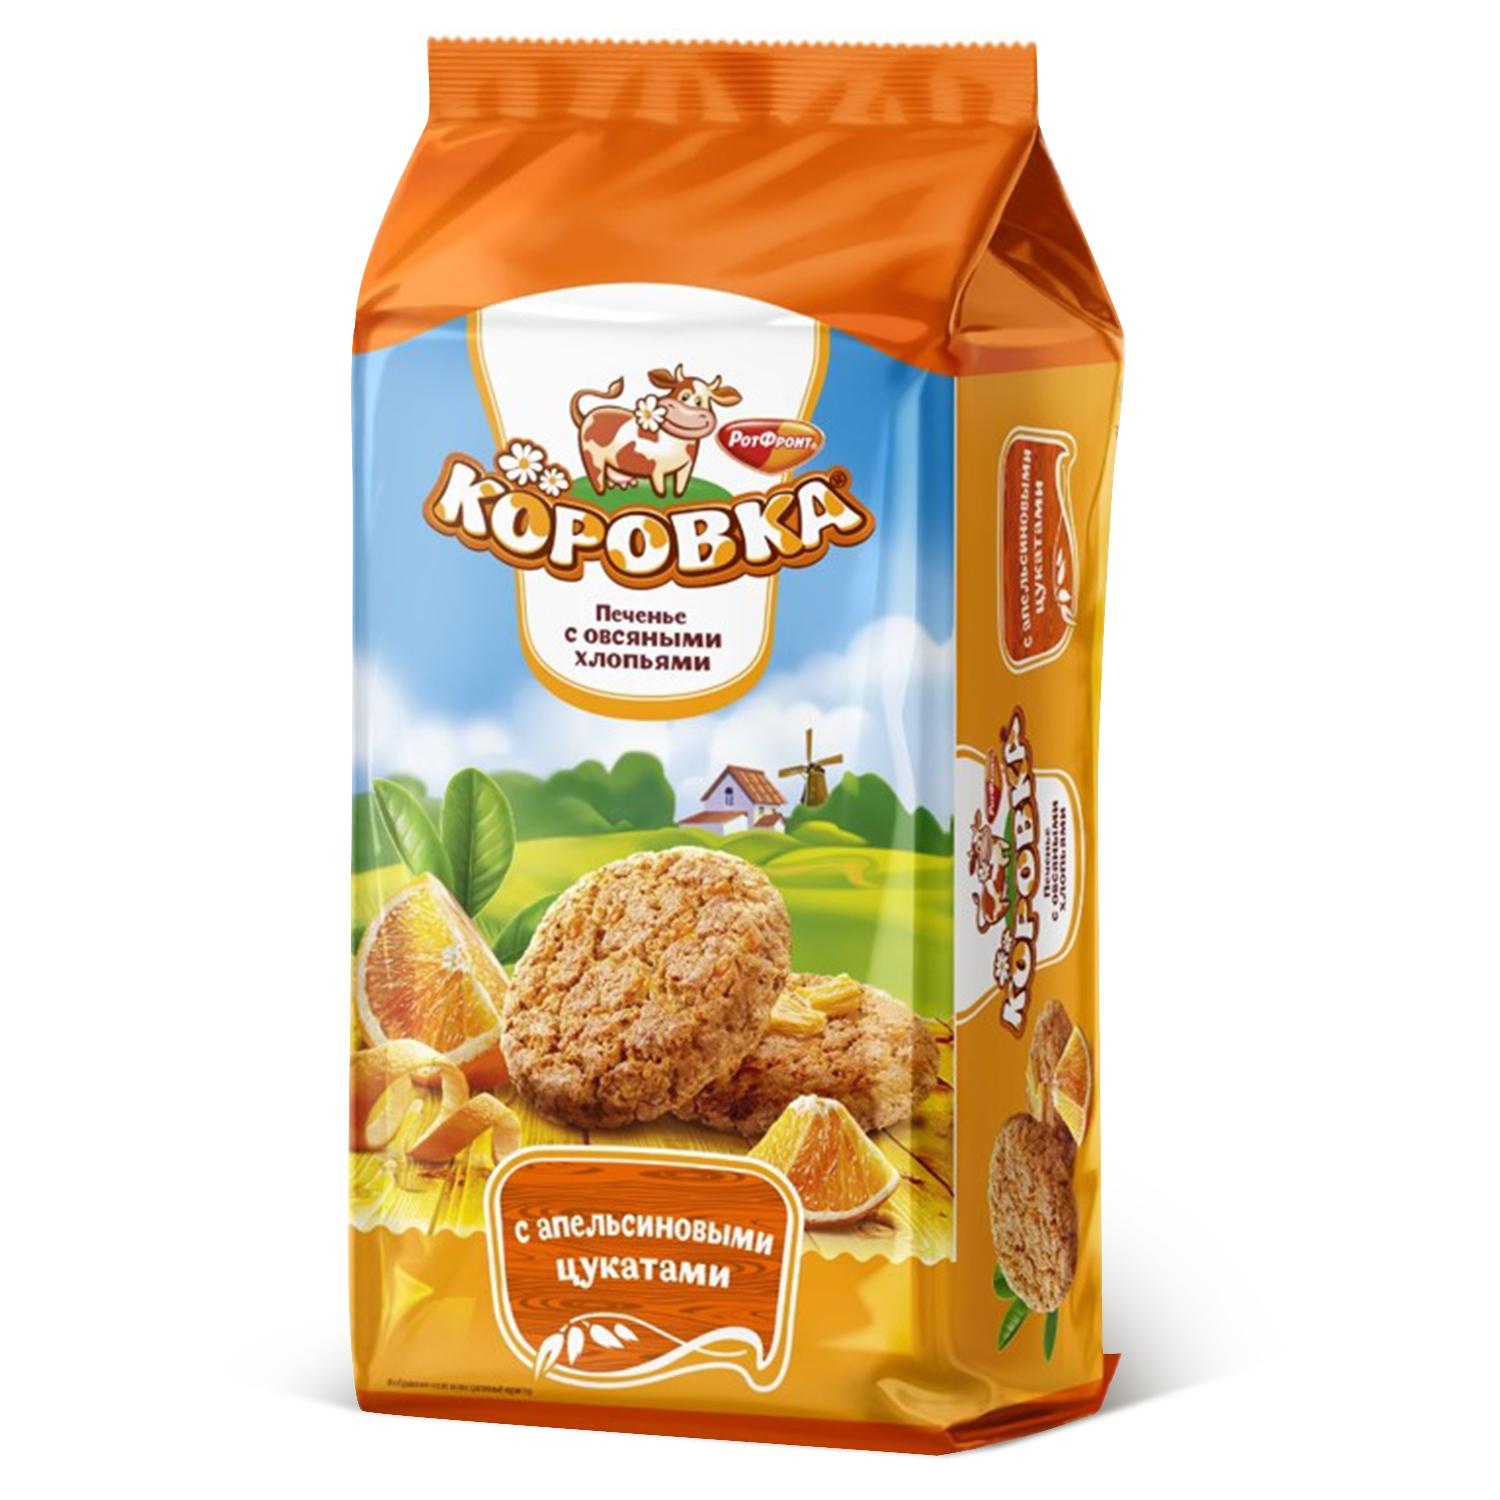 Печенье Коровка сдобное с овсяными хлопьями и апельсиновыми цукатами 190 гр., флоу-пак